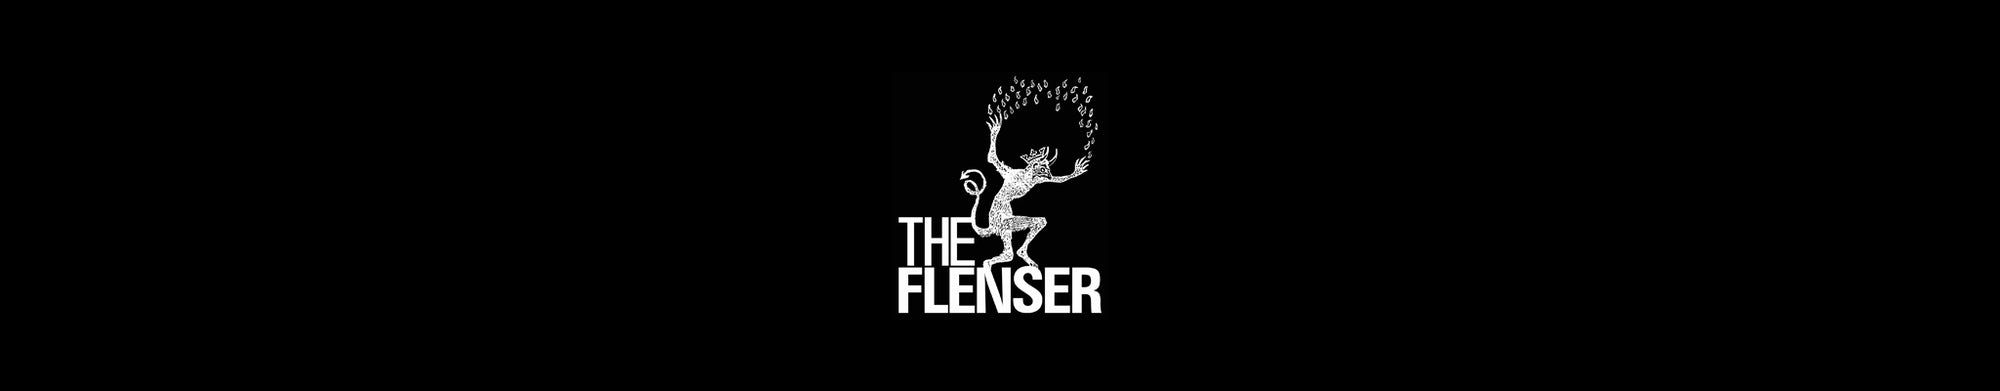 THE FLENSER